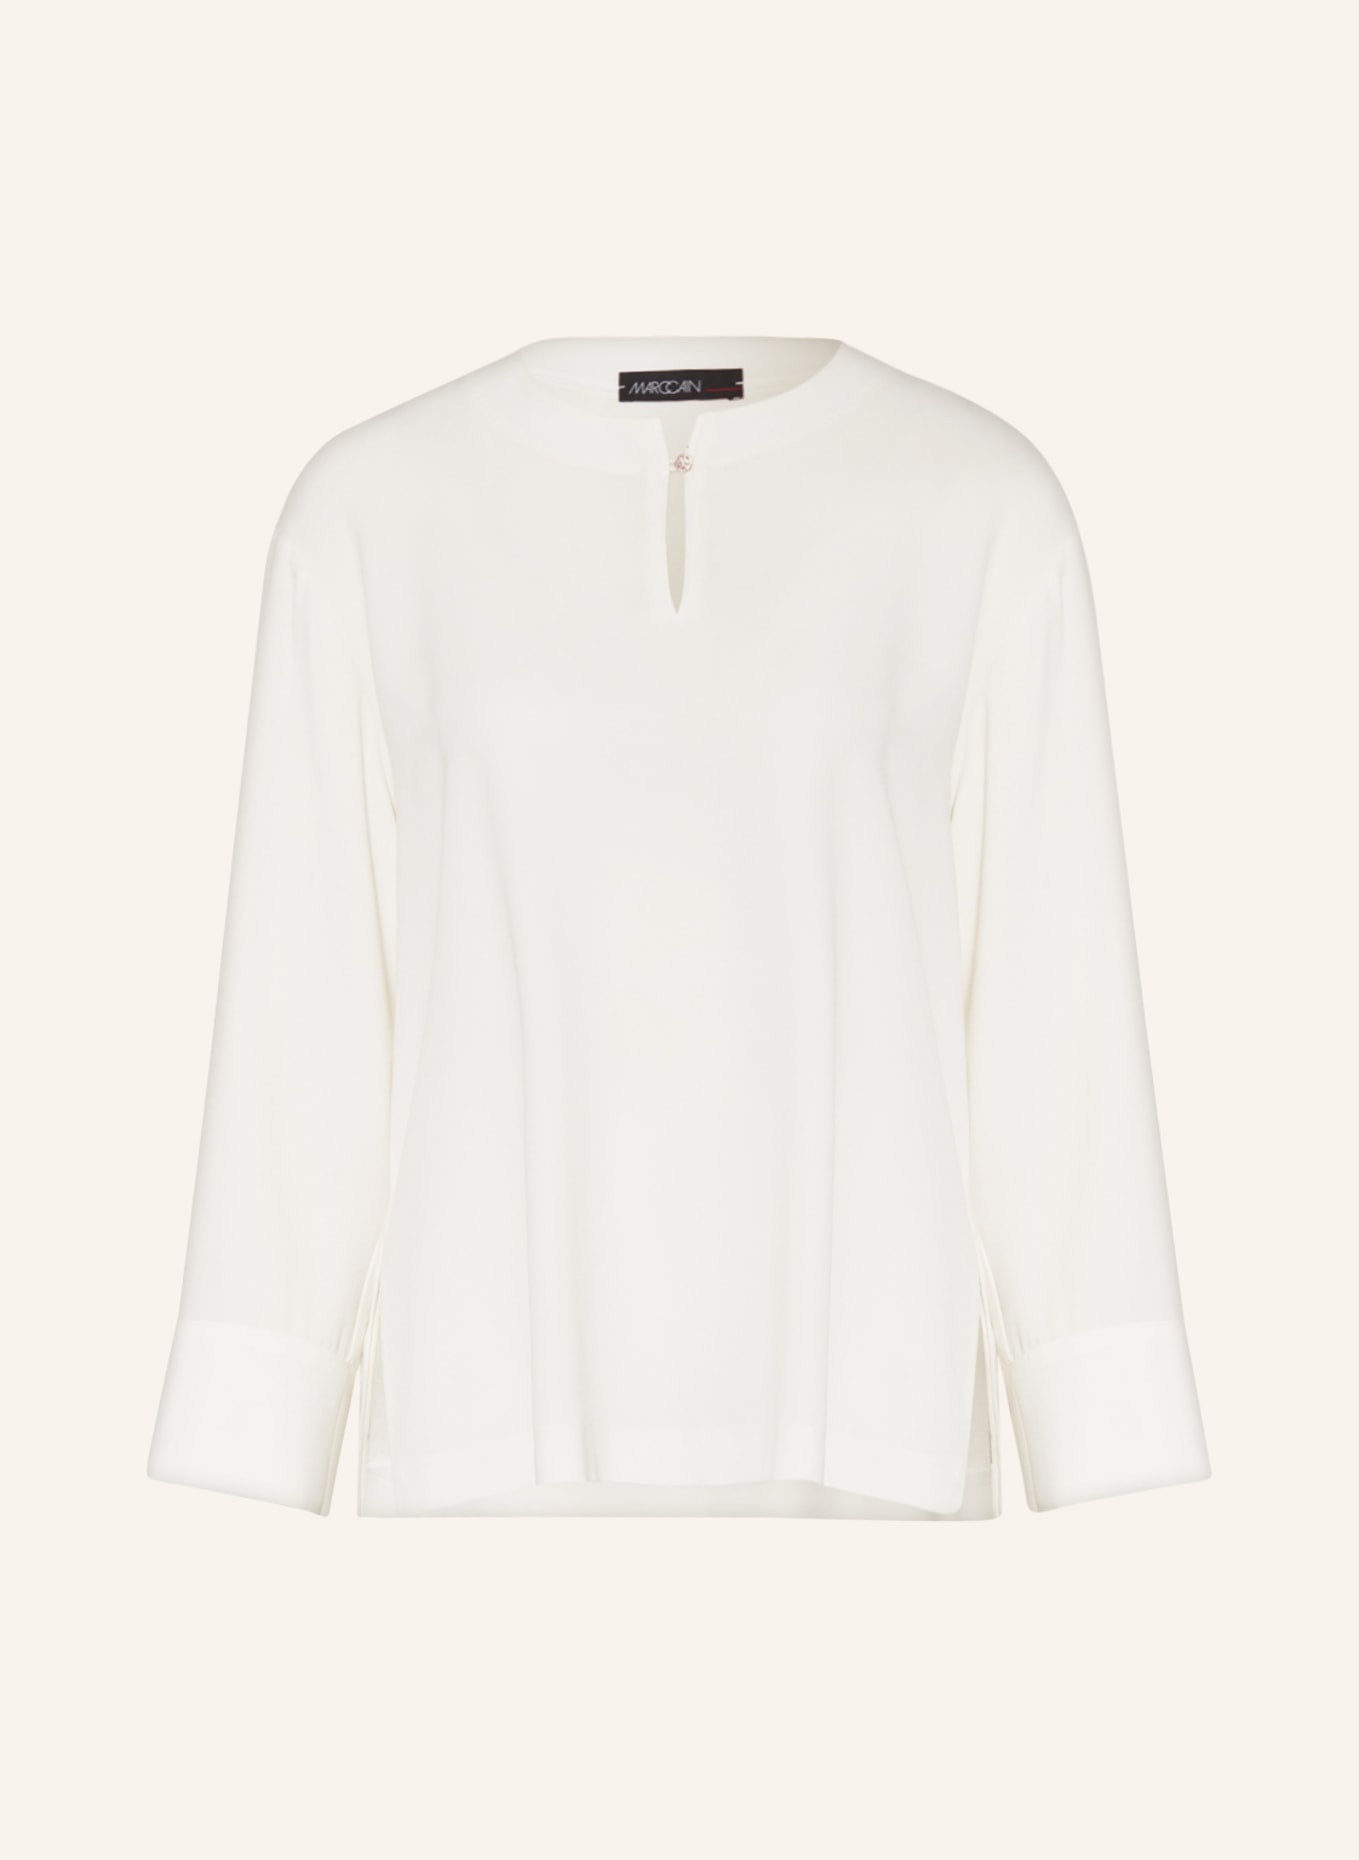 MARC CAIN Shirt blouse, Color: 110 off (Image 1)